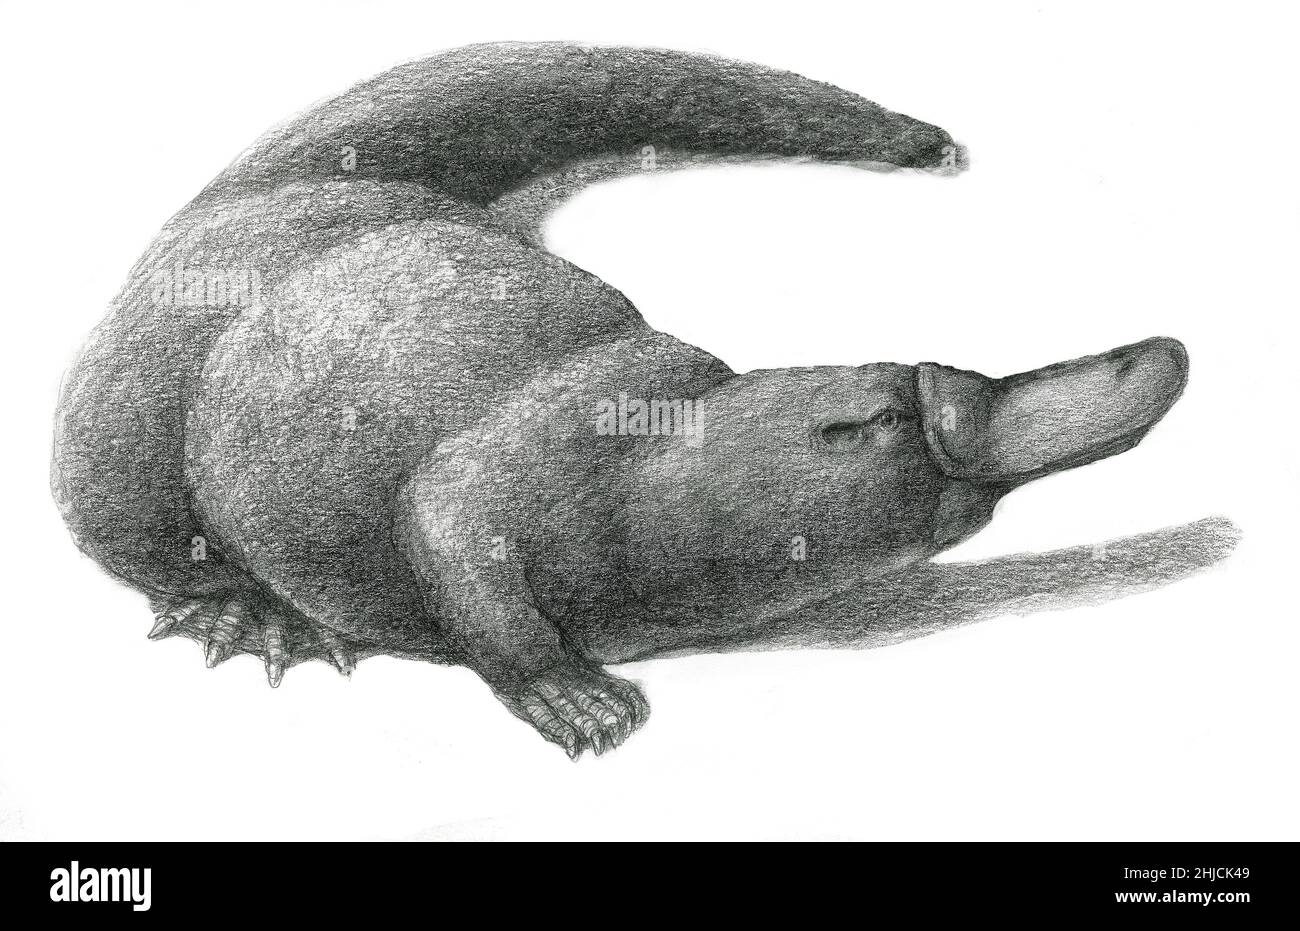 Illustrazione di un piatto di duckbill, Ornithorhynchus anatinus, un mammifero semi-acquatico endemico dell'Australia orientale e della Tasmania. Insieme alle quattro specie di echidna, è una delle cinque specie di monotrema, mammiferi che depongono le uova. Uno sperone sulle gambe posteriori dei maschi è usato per trasportare un veleno. Foto Stock